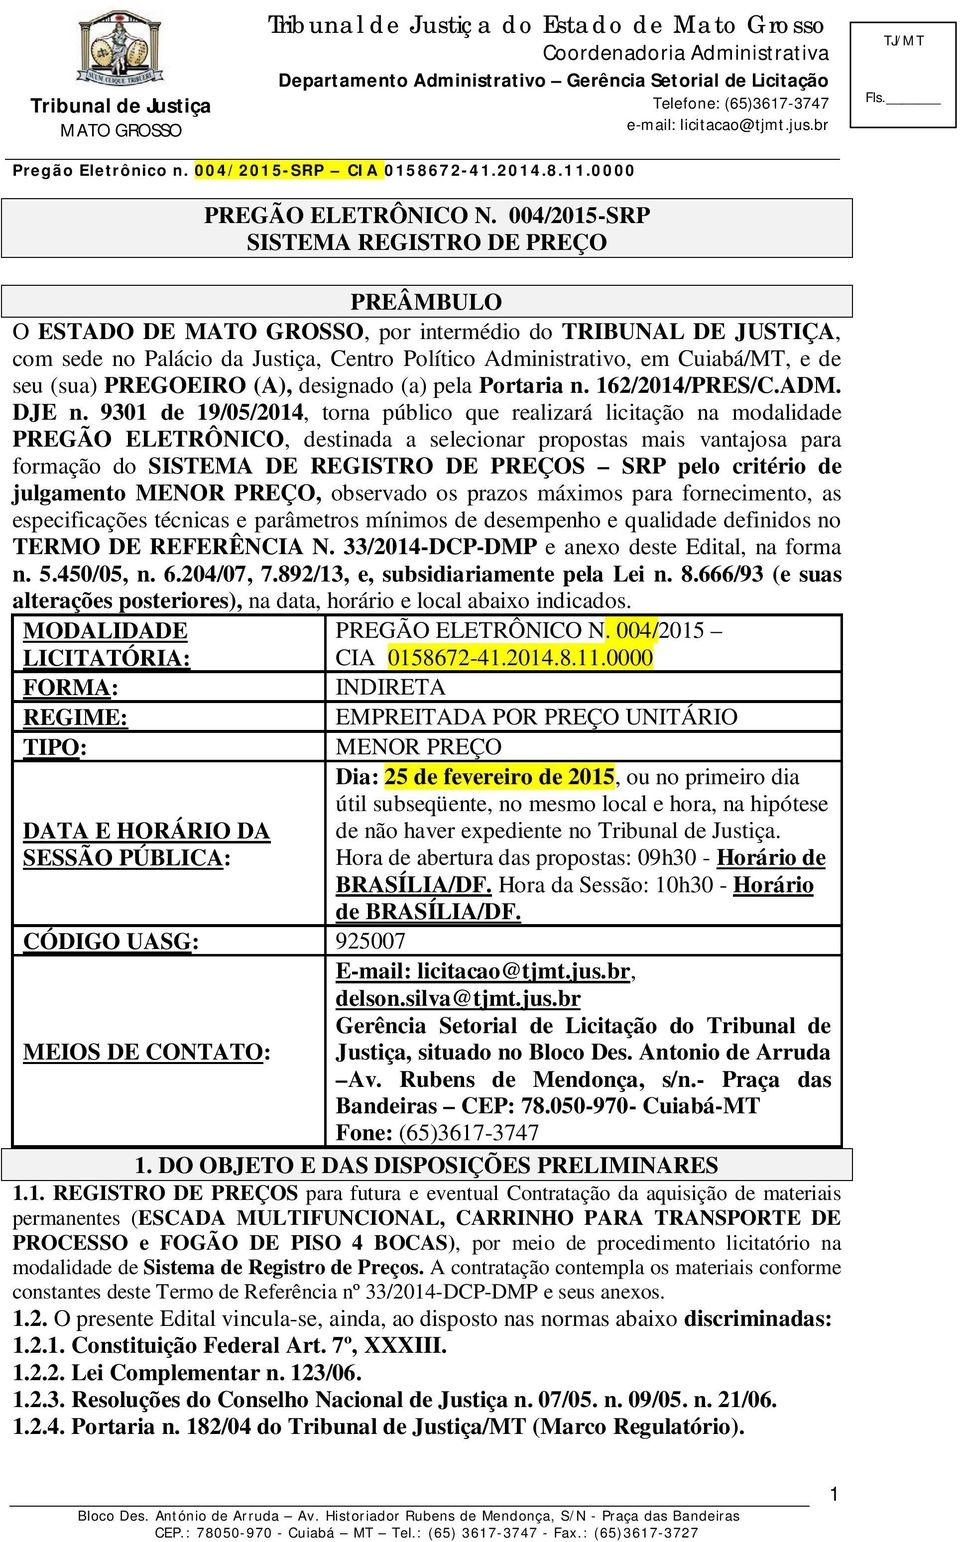 PREGOEIRO (A), designado (a) pela Portaria n. 162/2014/PRES/C.ADM. DJE n.